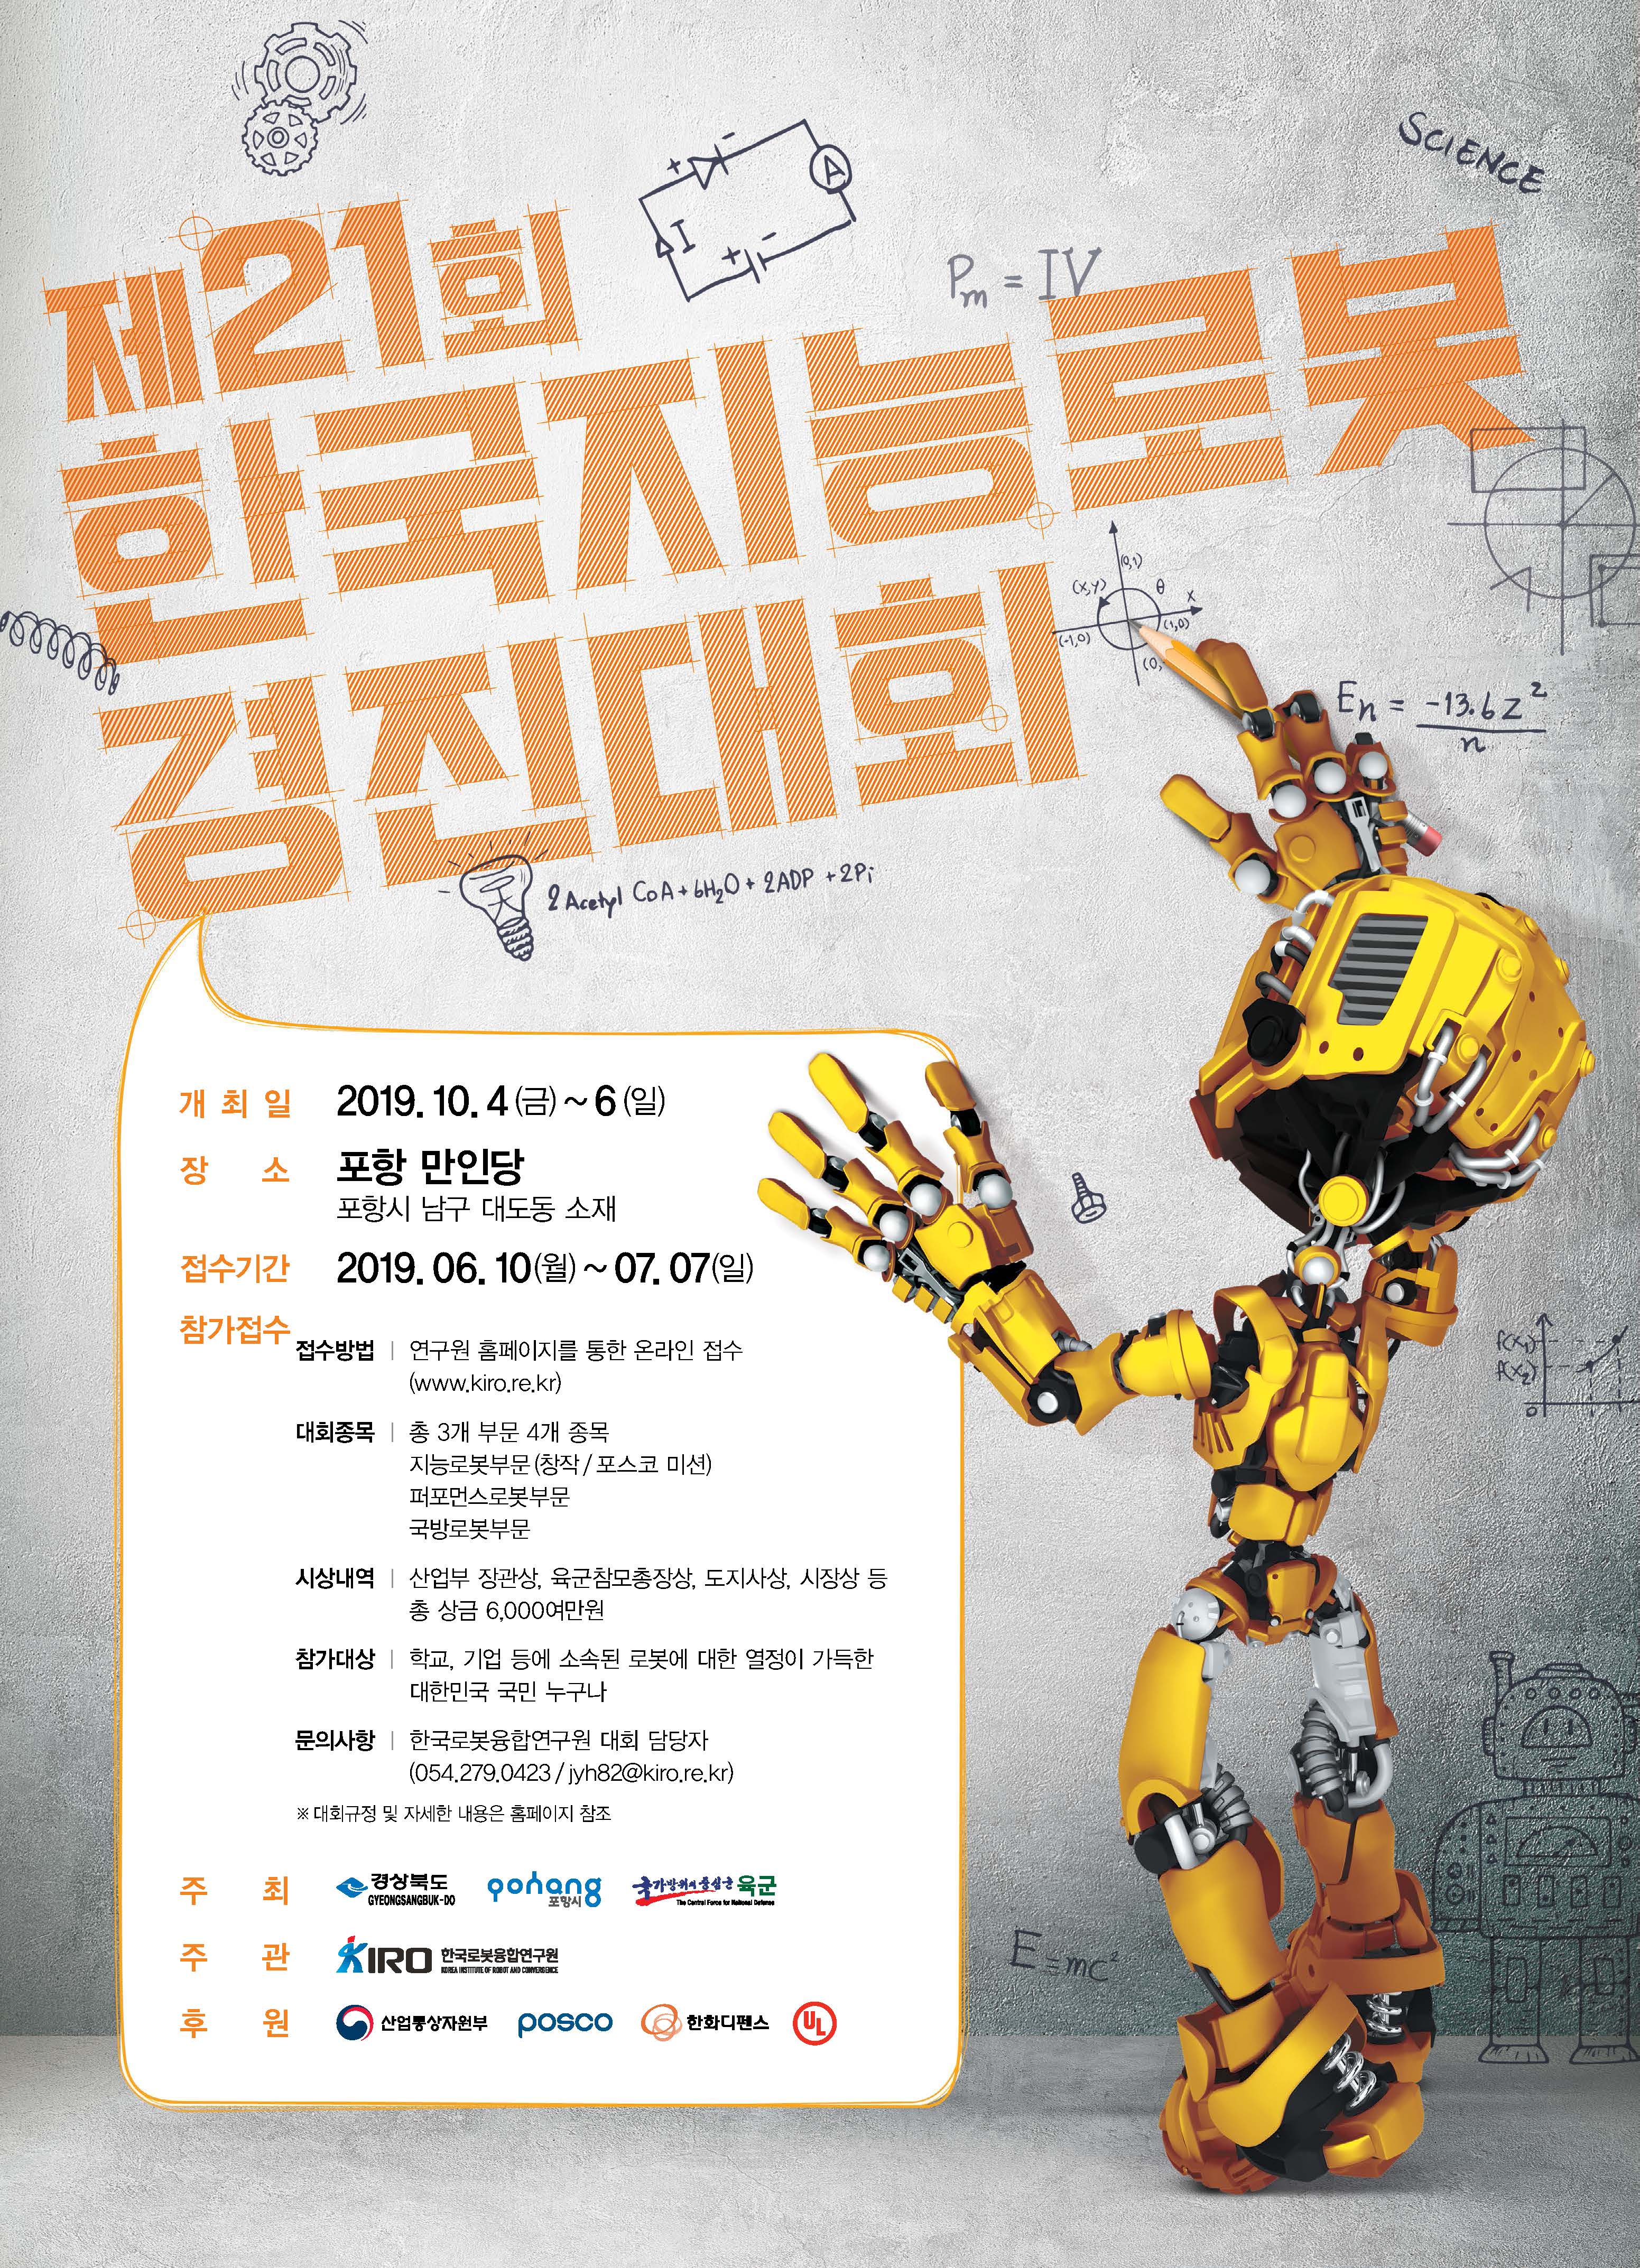 제21회 한국지능로봇경진대회 (21th KIRC)